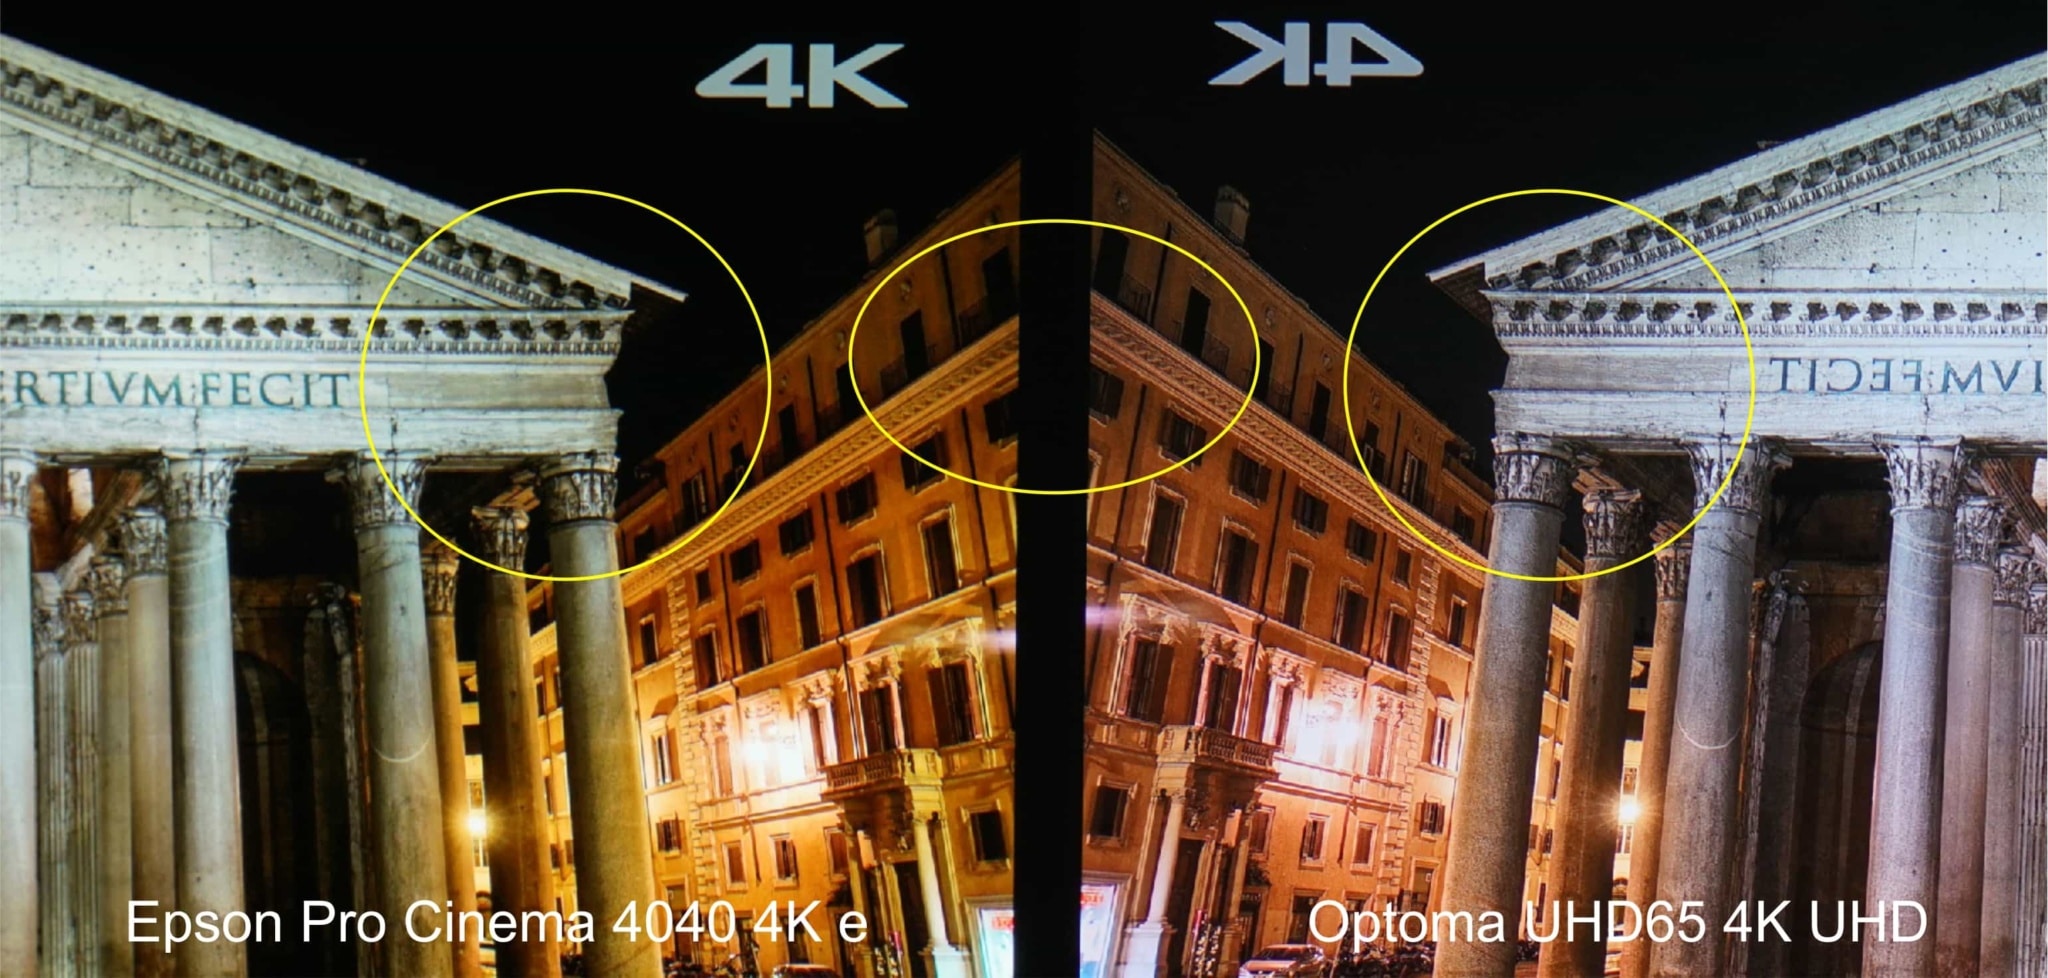 Sony VPL-VW365ES vs Epson Pro Cinema 4040: Detail comparison close up.